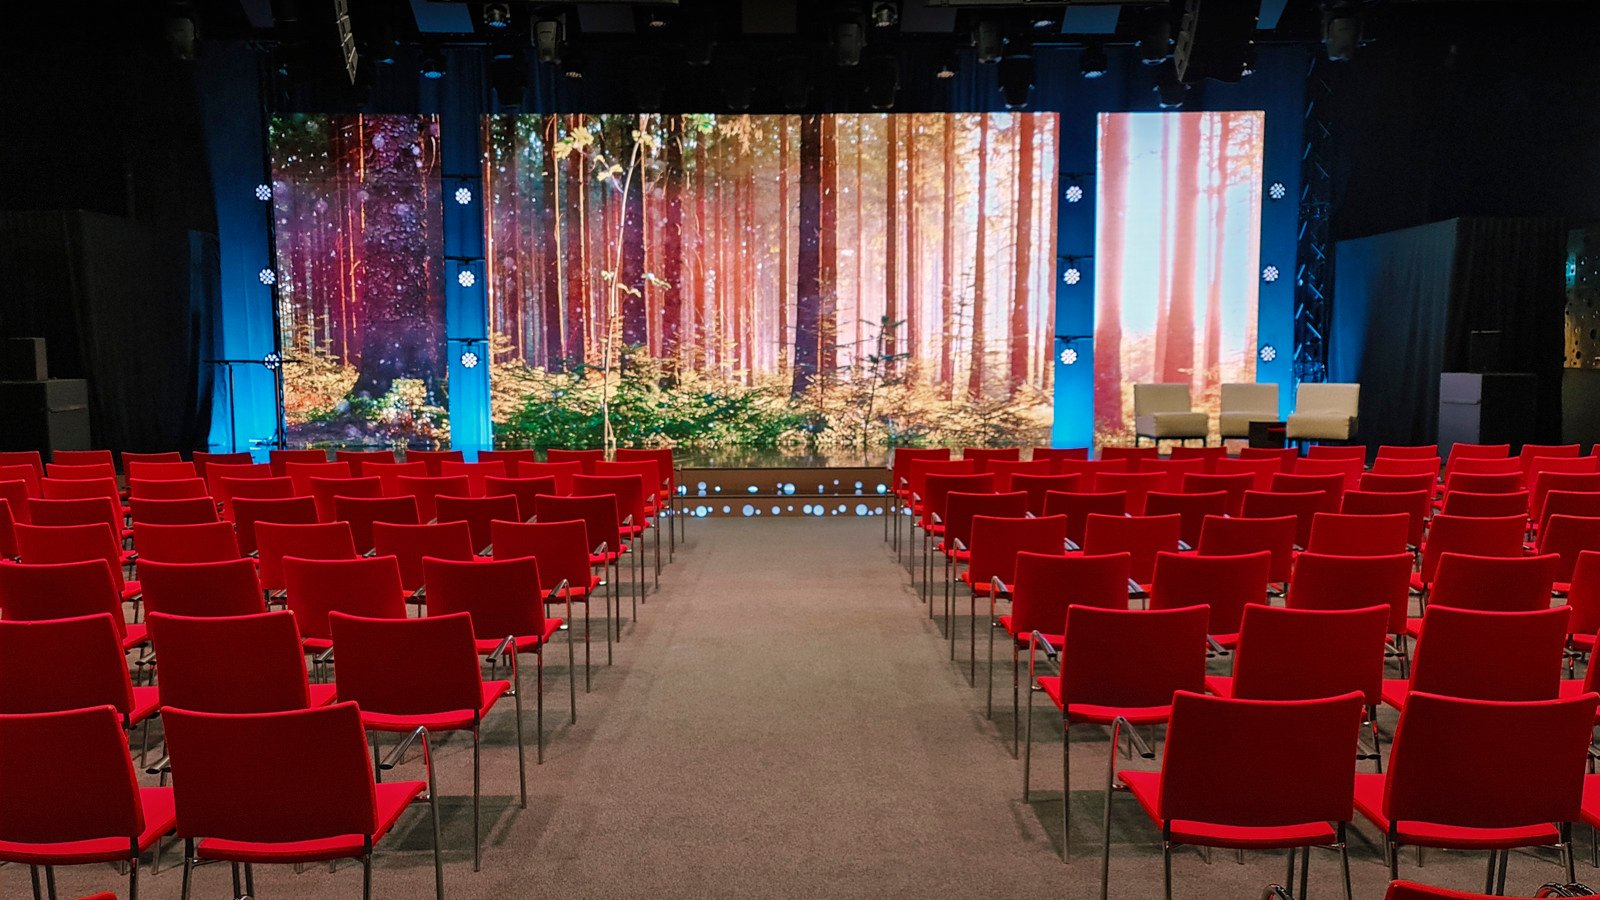 Konferenssal med biosittning, röda stolar, tv-studio, projektor